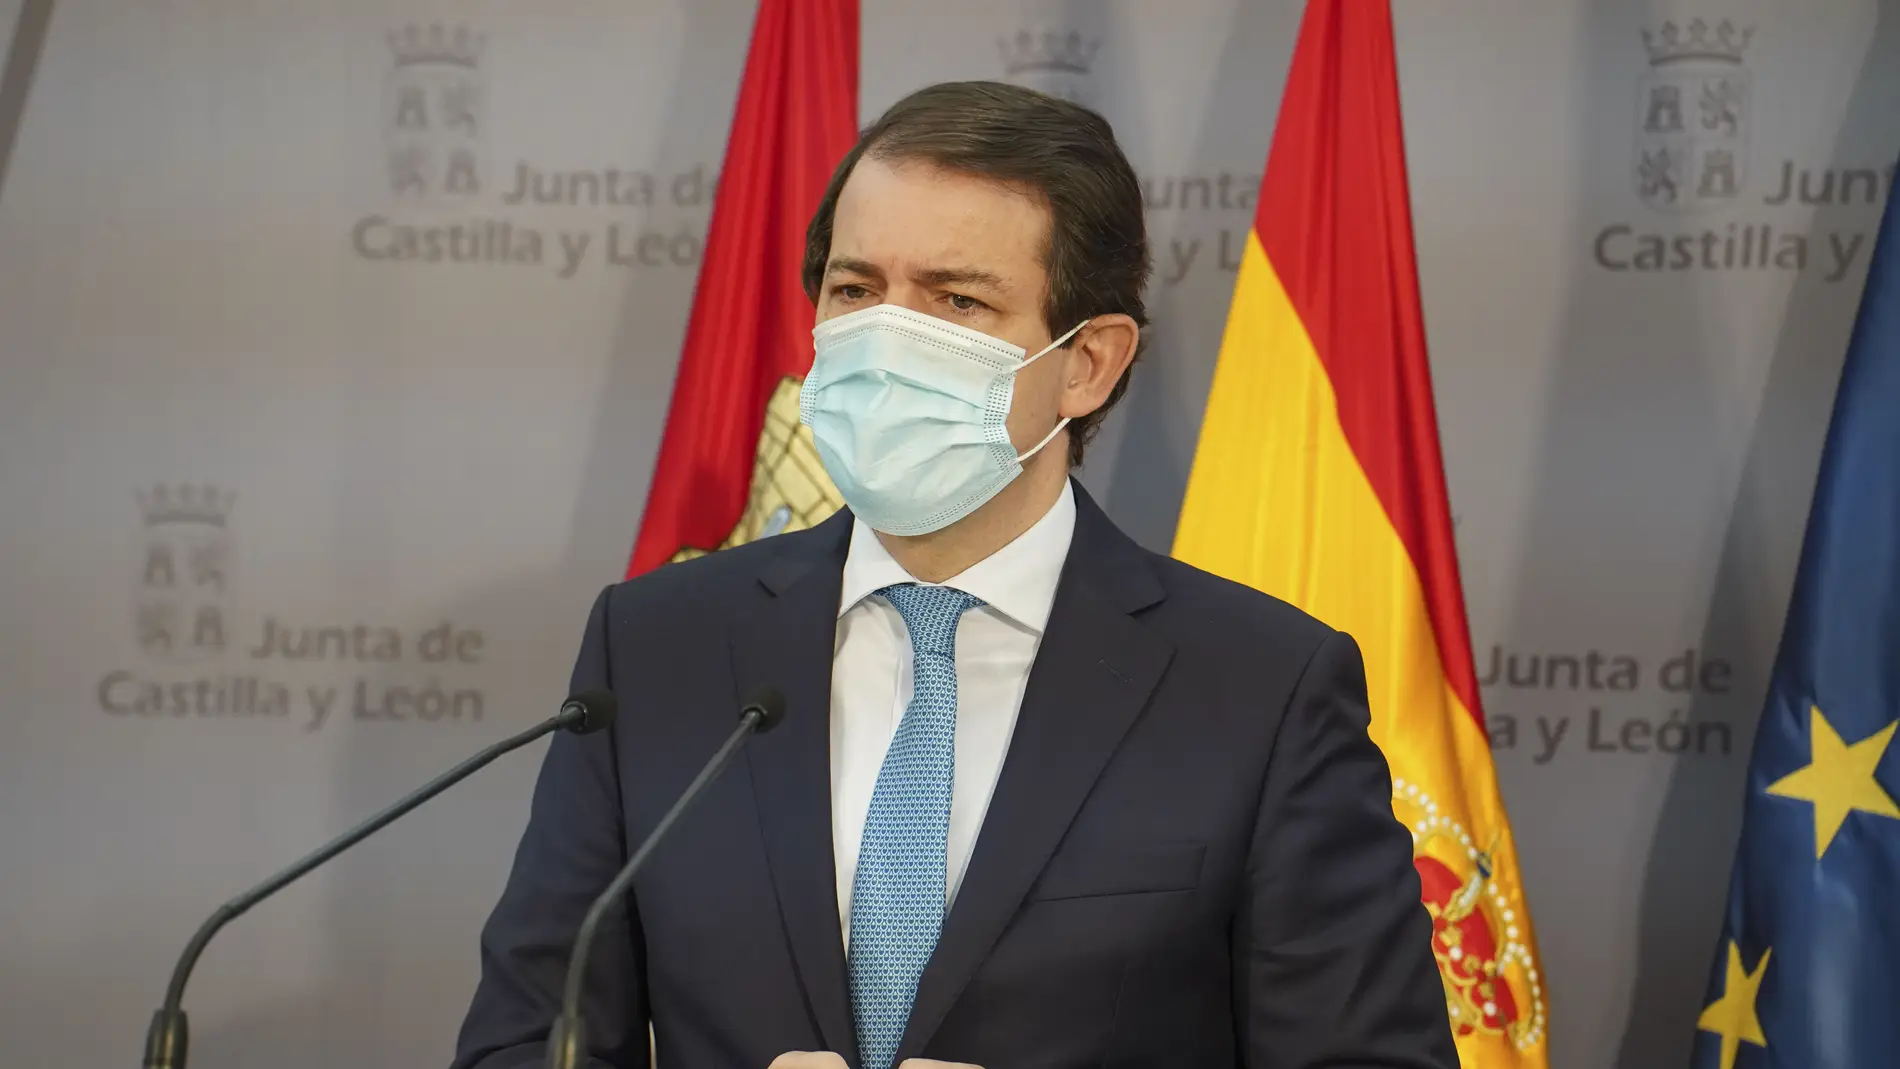 Presidente de la Junta de Castilla y León Alfonso Fernández Mañueco